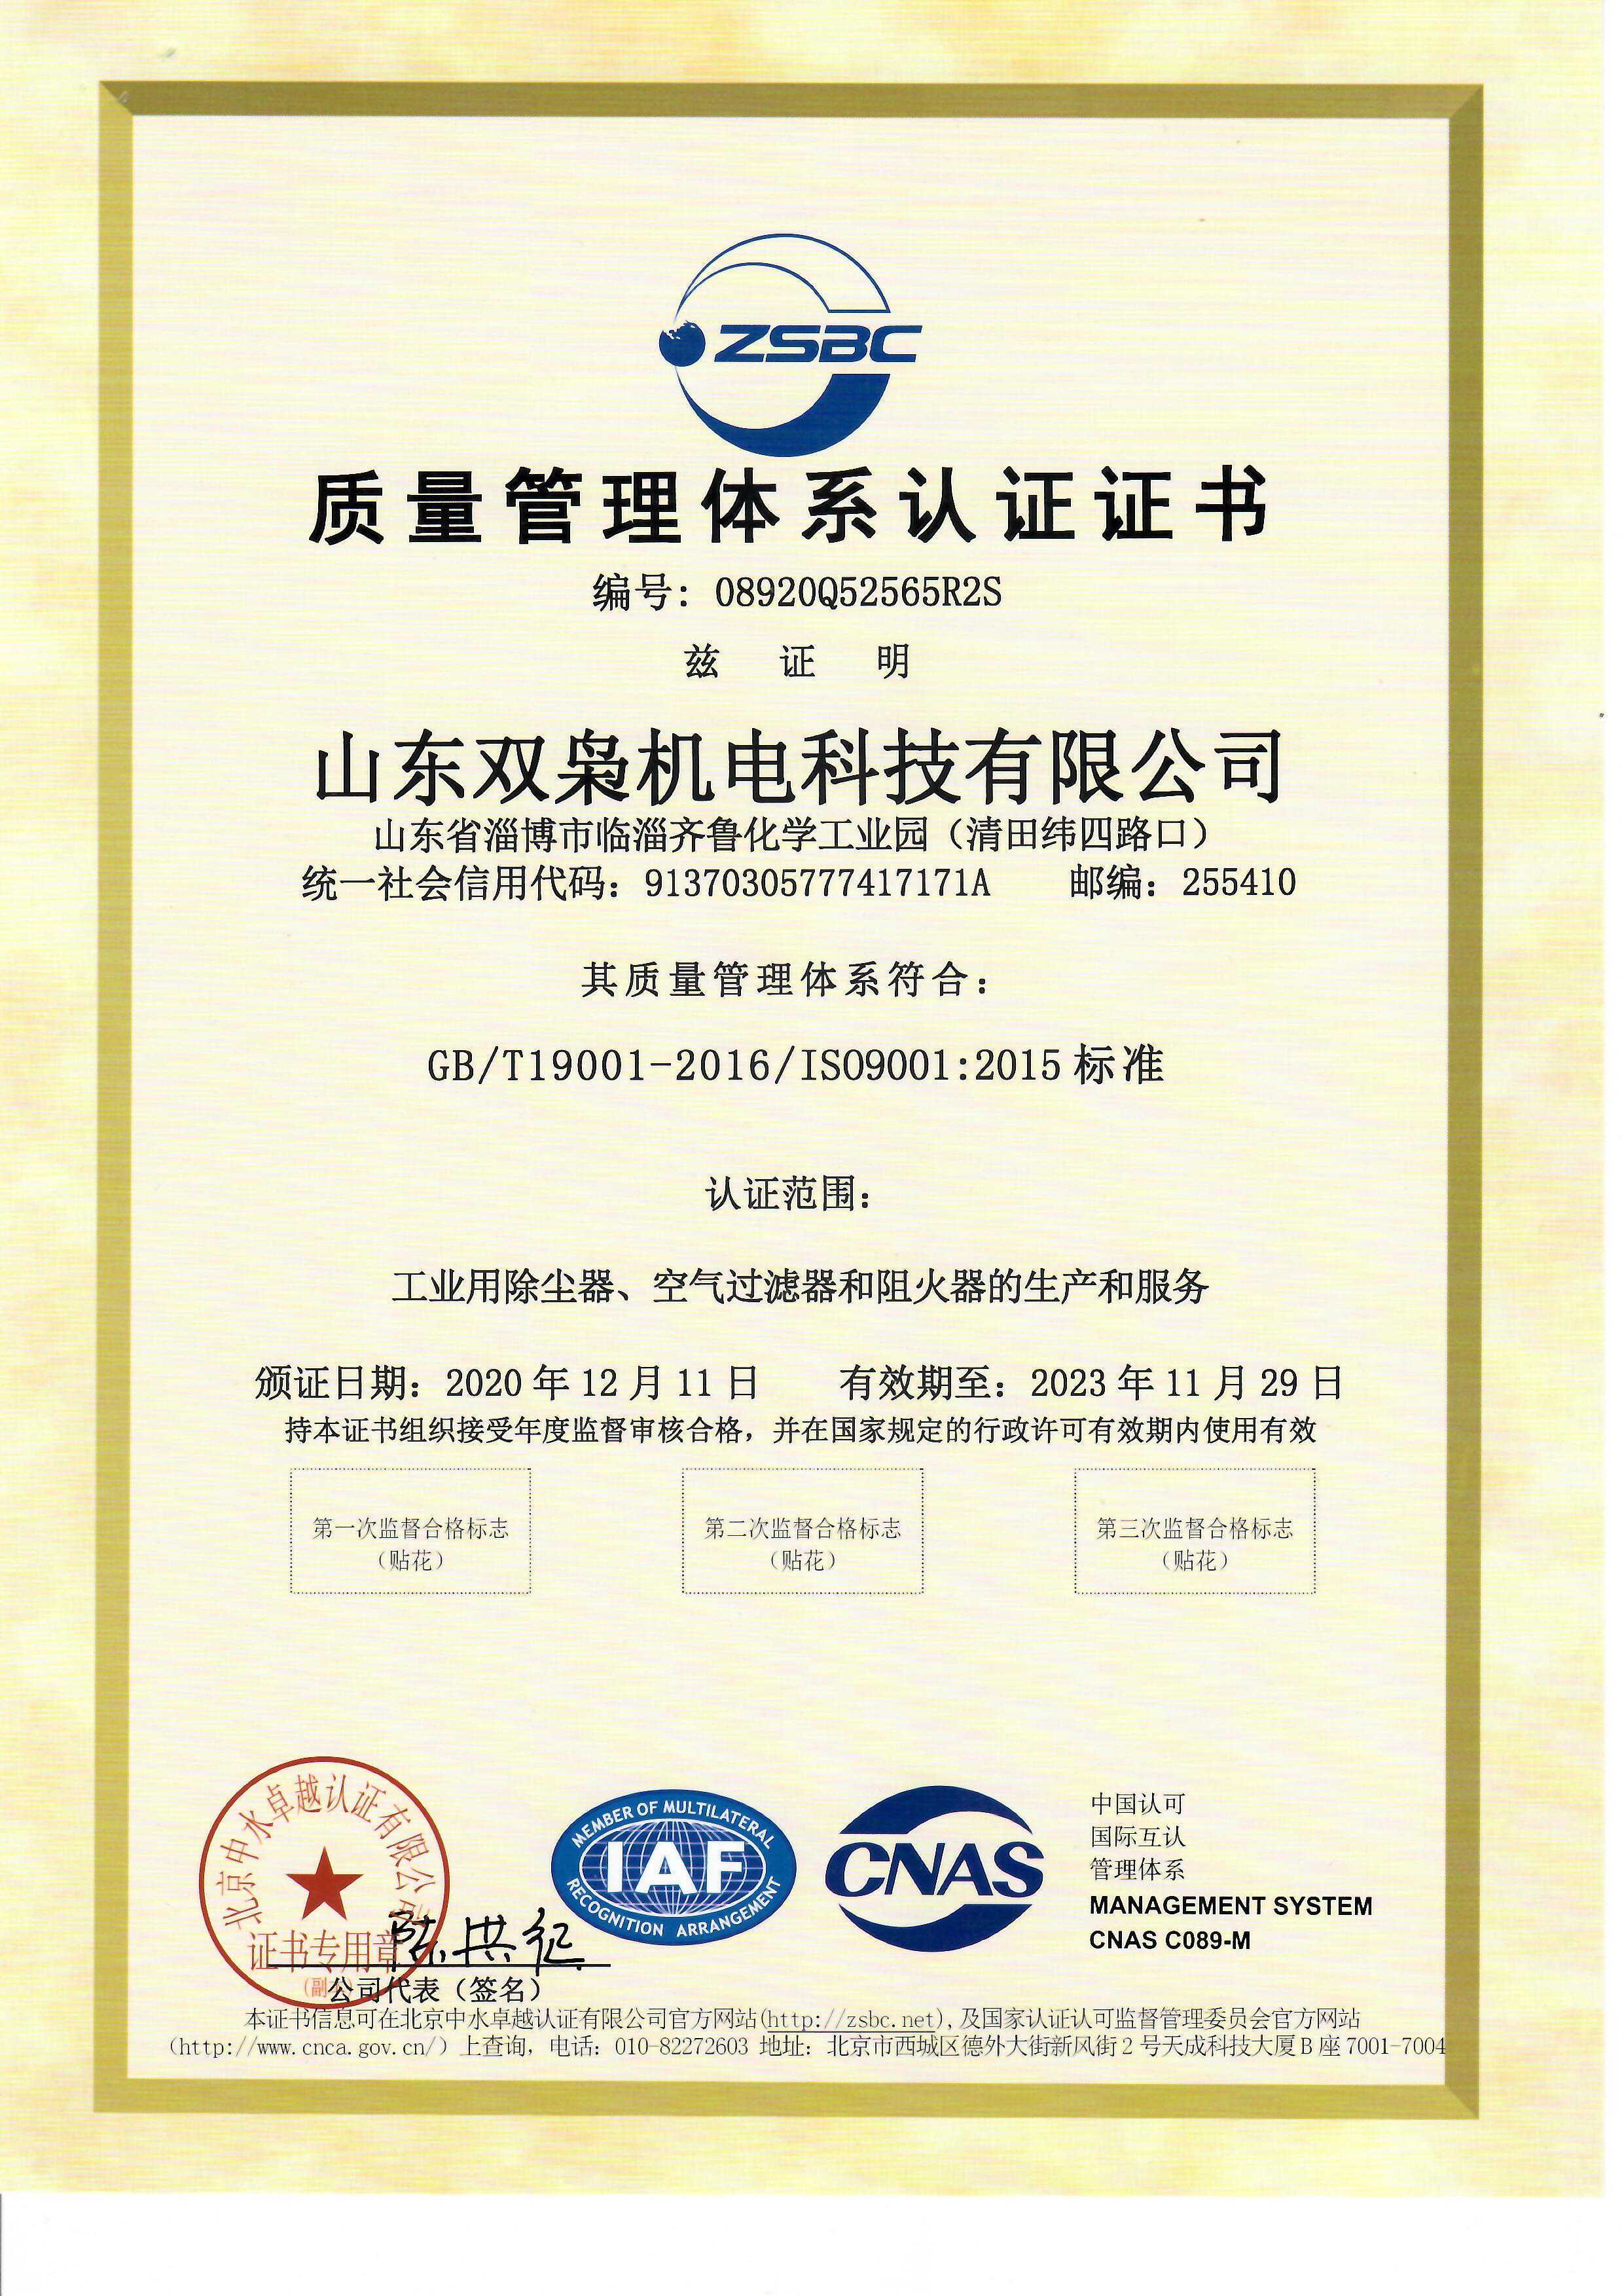 阻火器厂家 质量管理体系认证证书